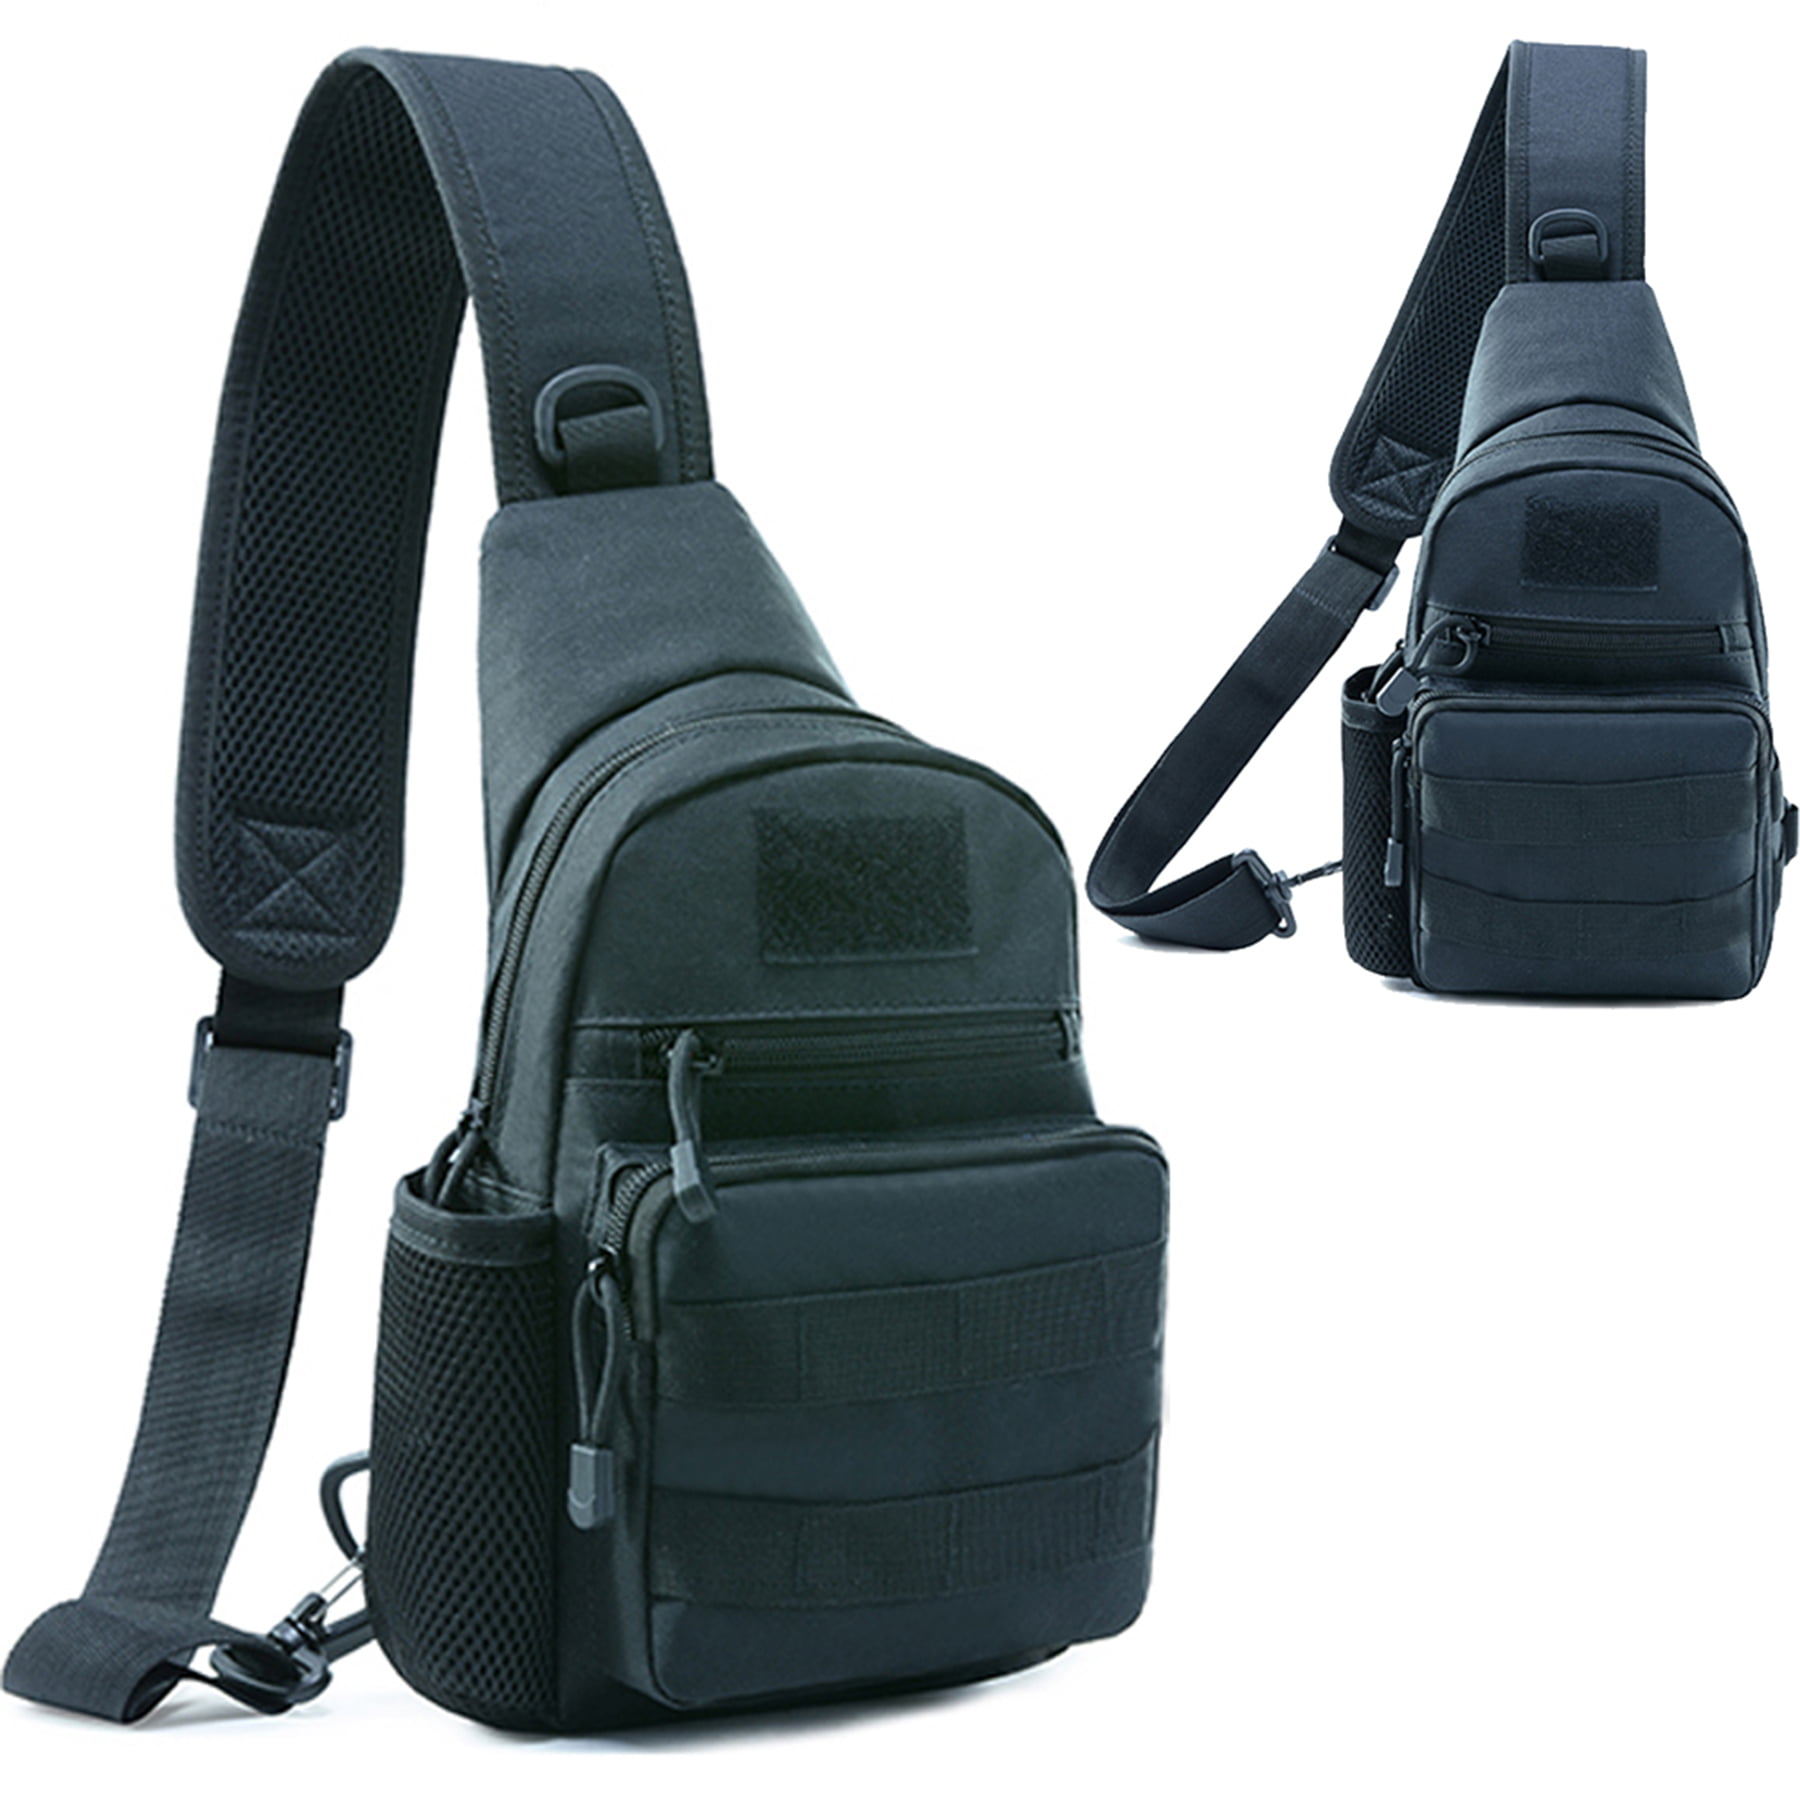 Men Backpack Molle Tactical Sling Chest Pack Shoulder Bag Outdoor Hiking Travel 